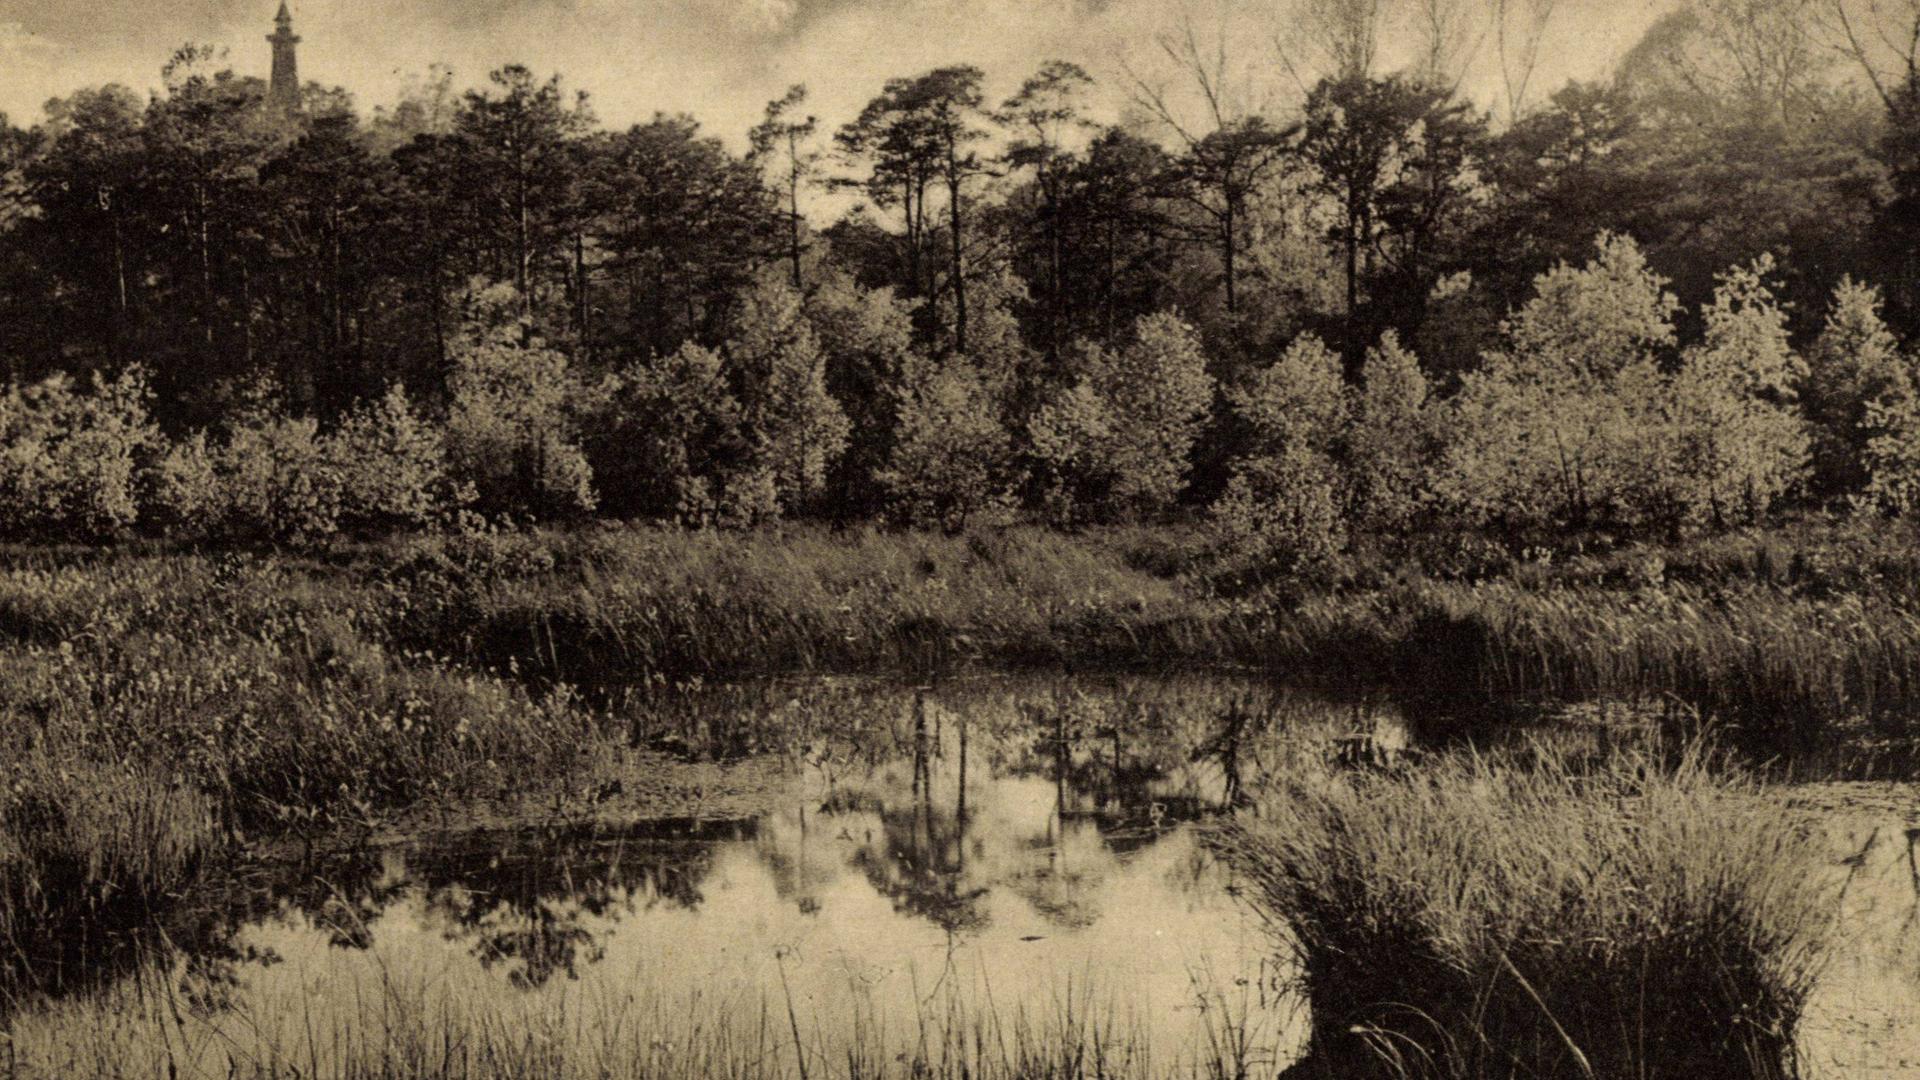 Eine alte schwarz-weiß bzw. Sepia-farbene Aufnahme vom Teufelsmoor in Berlin-Köpenick schätzungsweise aus dem Jahr 1935. Zu sehen sind Bäume, Gräser und eine Wasserfläche. Die Atmosphäre mutet düster an.